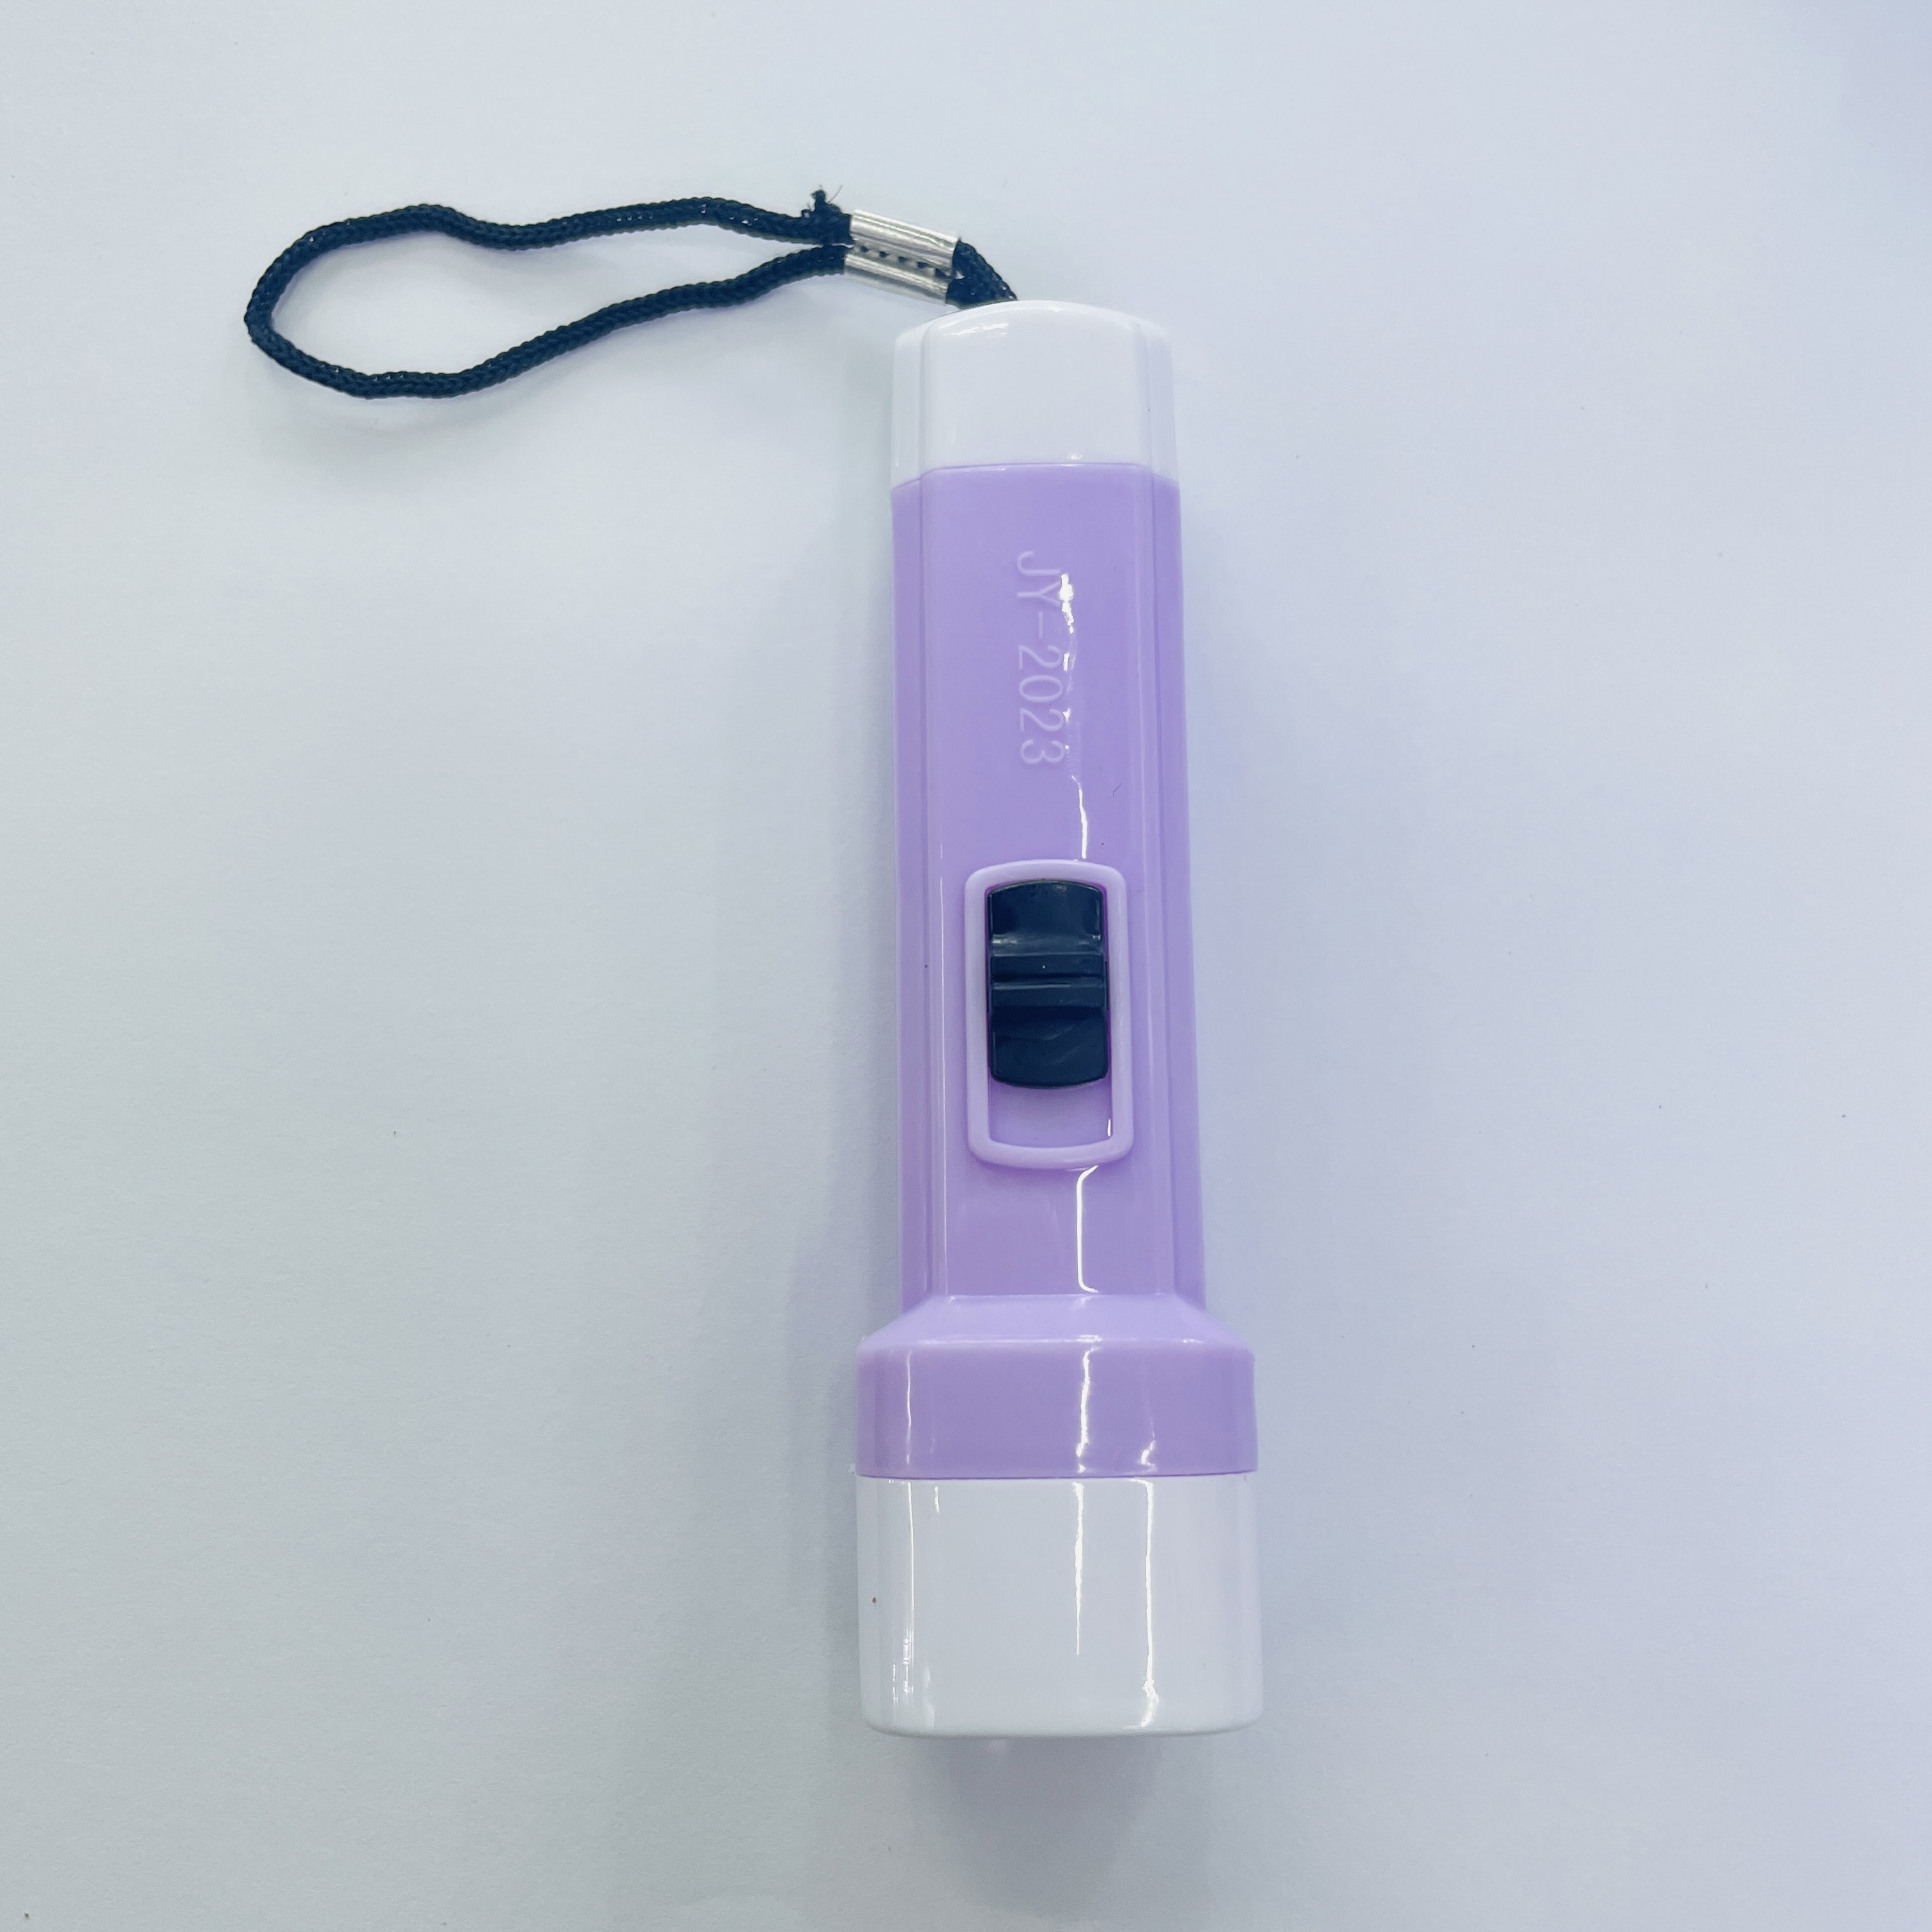 塑料玩具小手电筒强光电筒照明灯LED批发实用小家电小礼品详情3